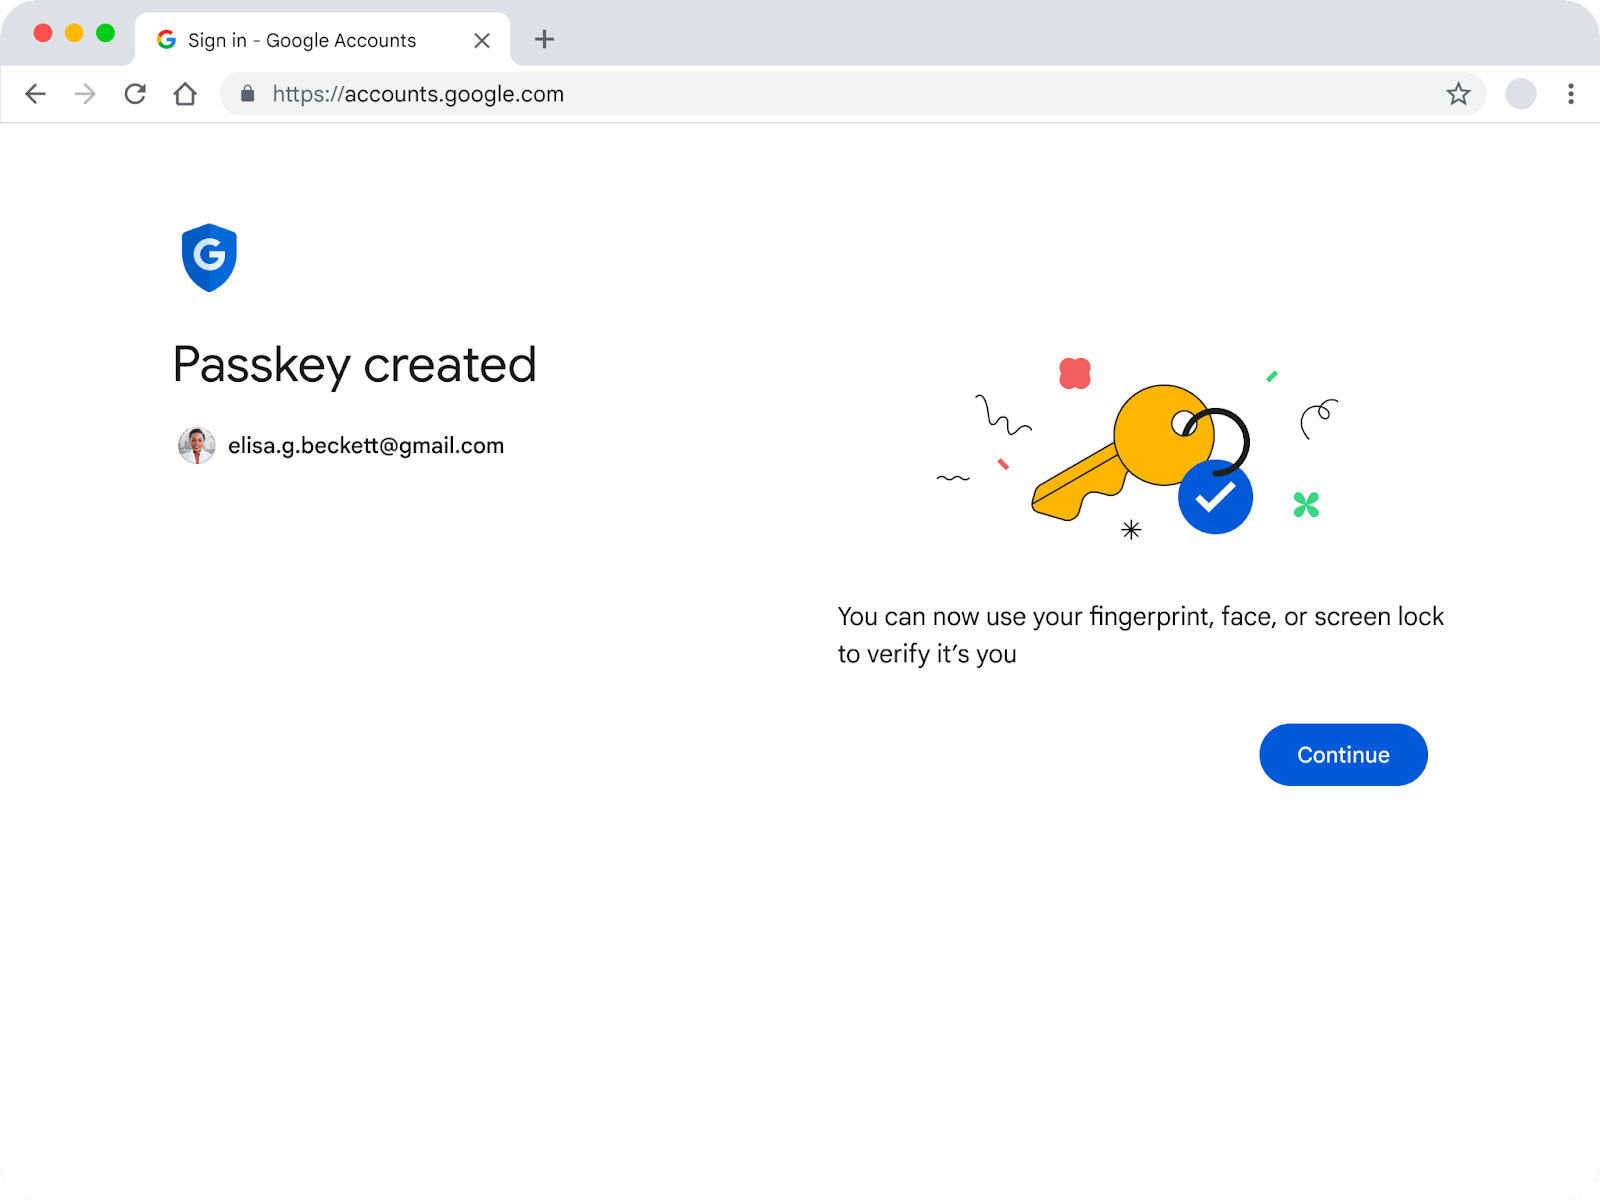 Una volta creata la passkey, gli utenti vedranno questa pagina